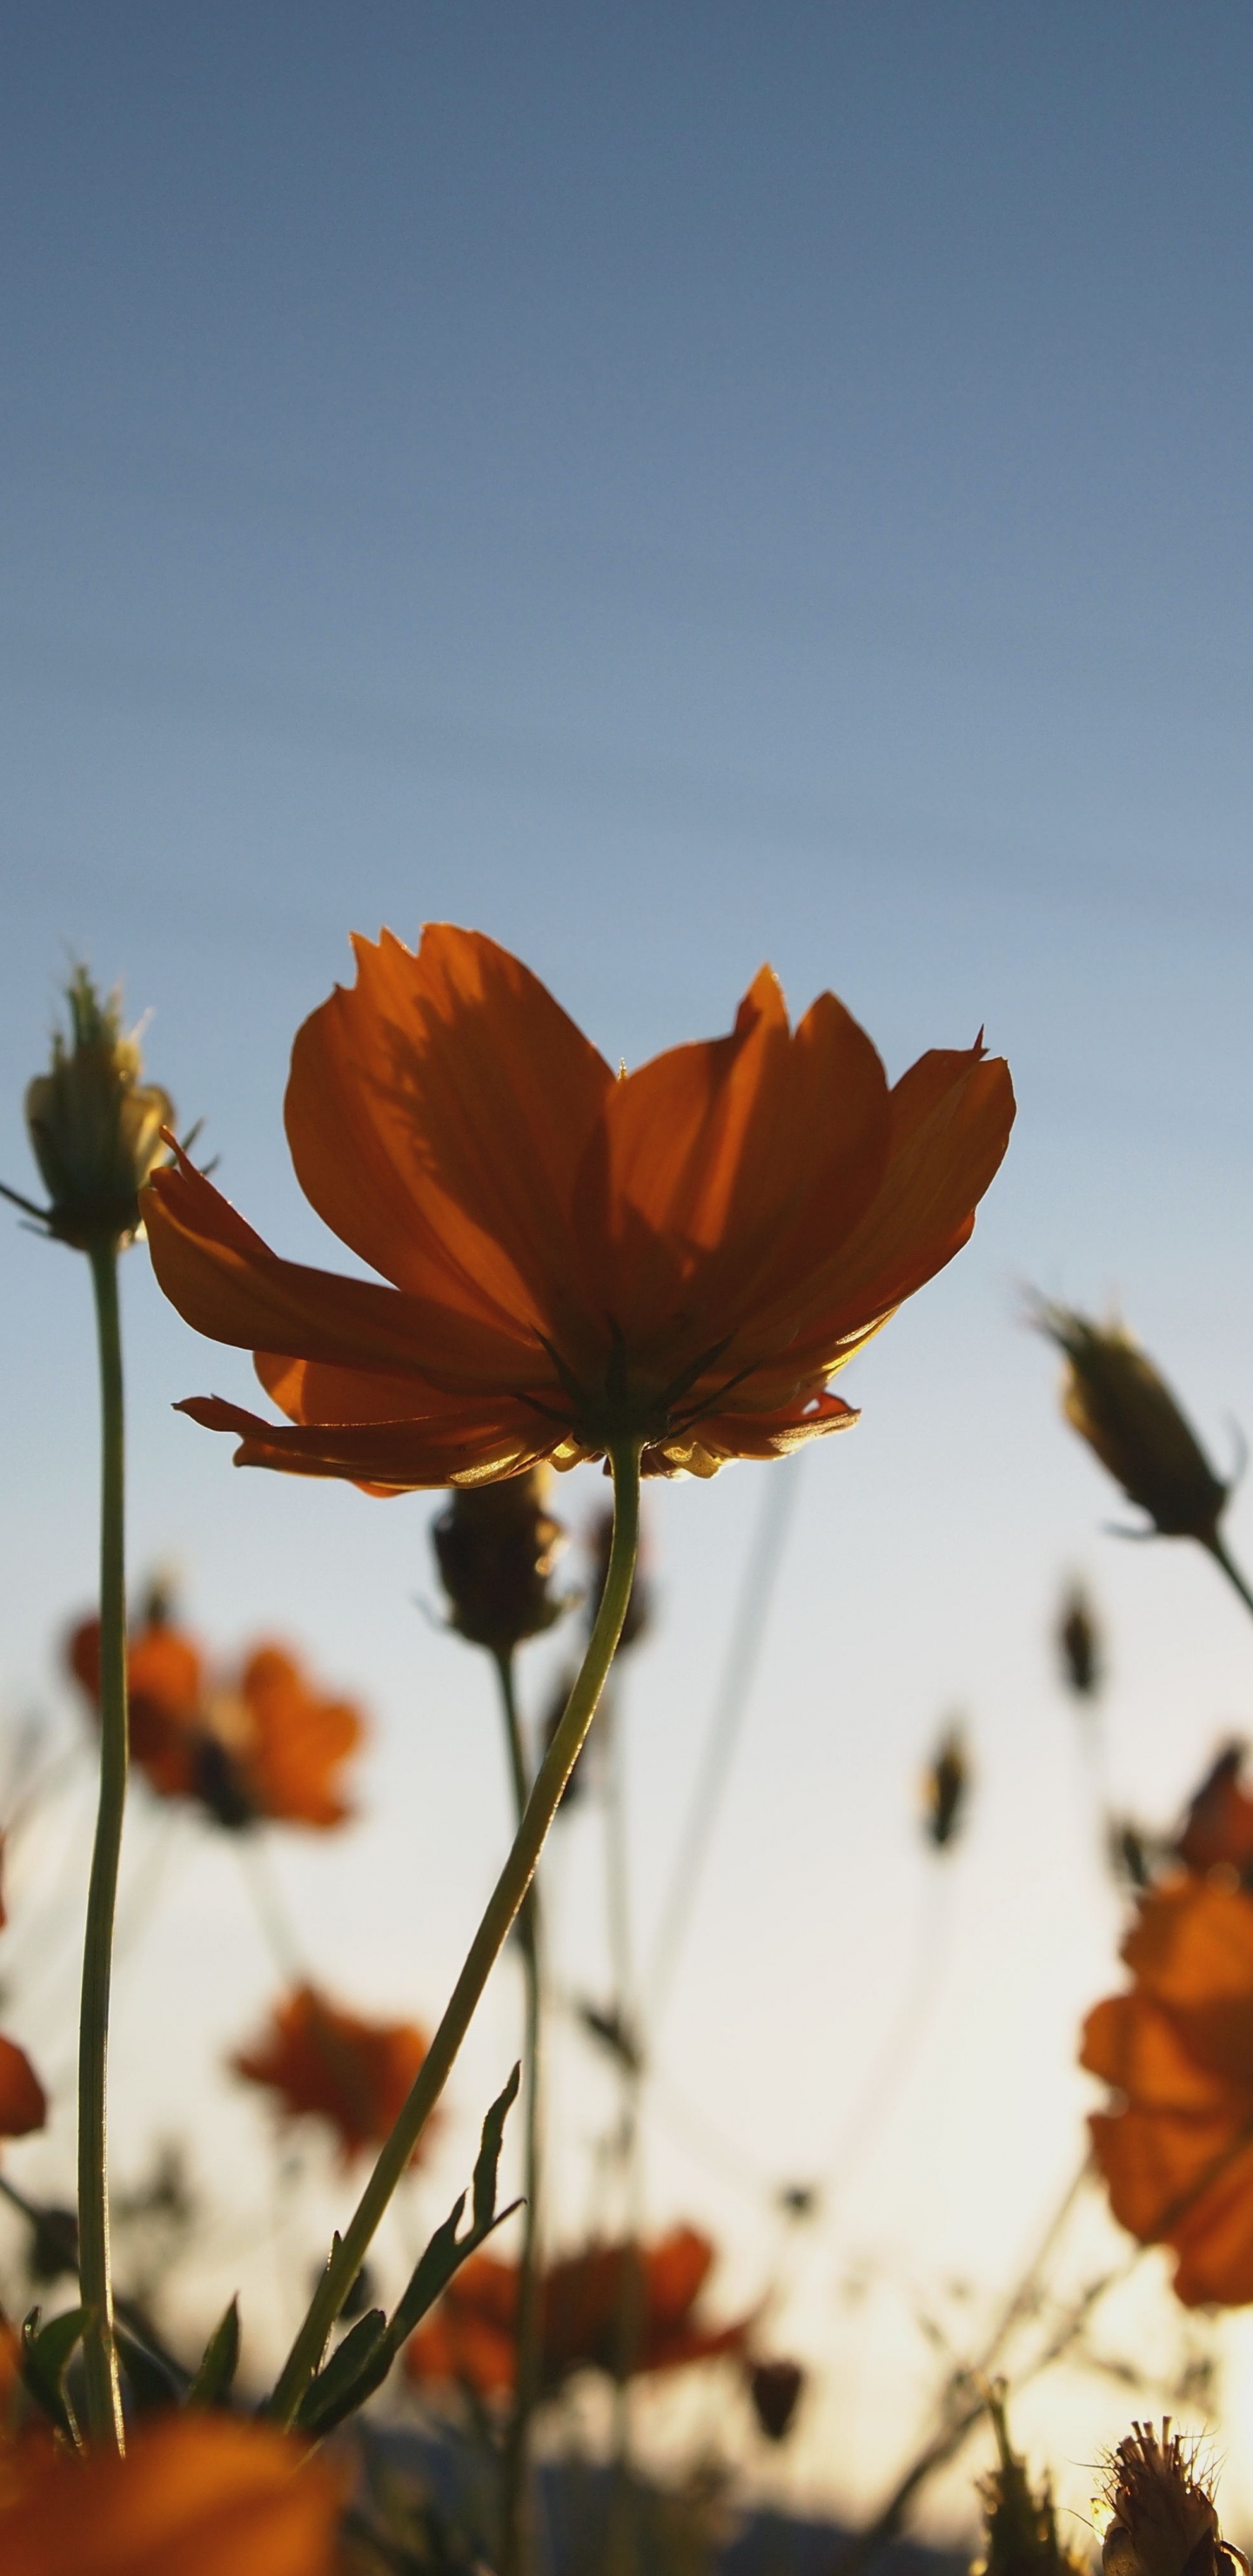 Orange Flower in Tilt Shift Lens. Wallpaper in 1440x2960 Resolution